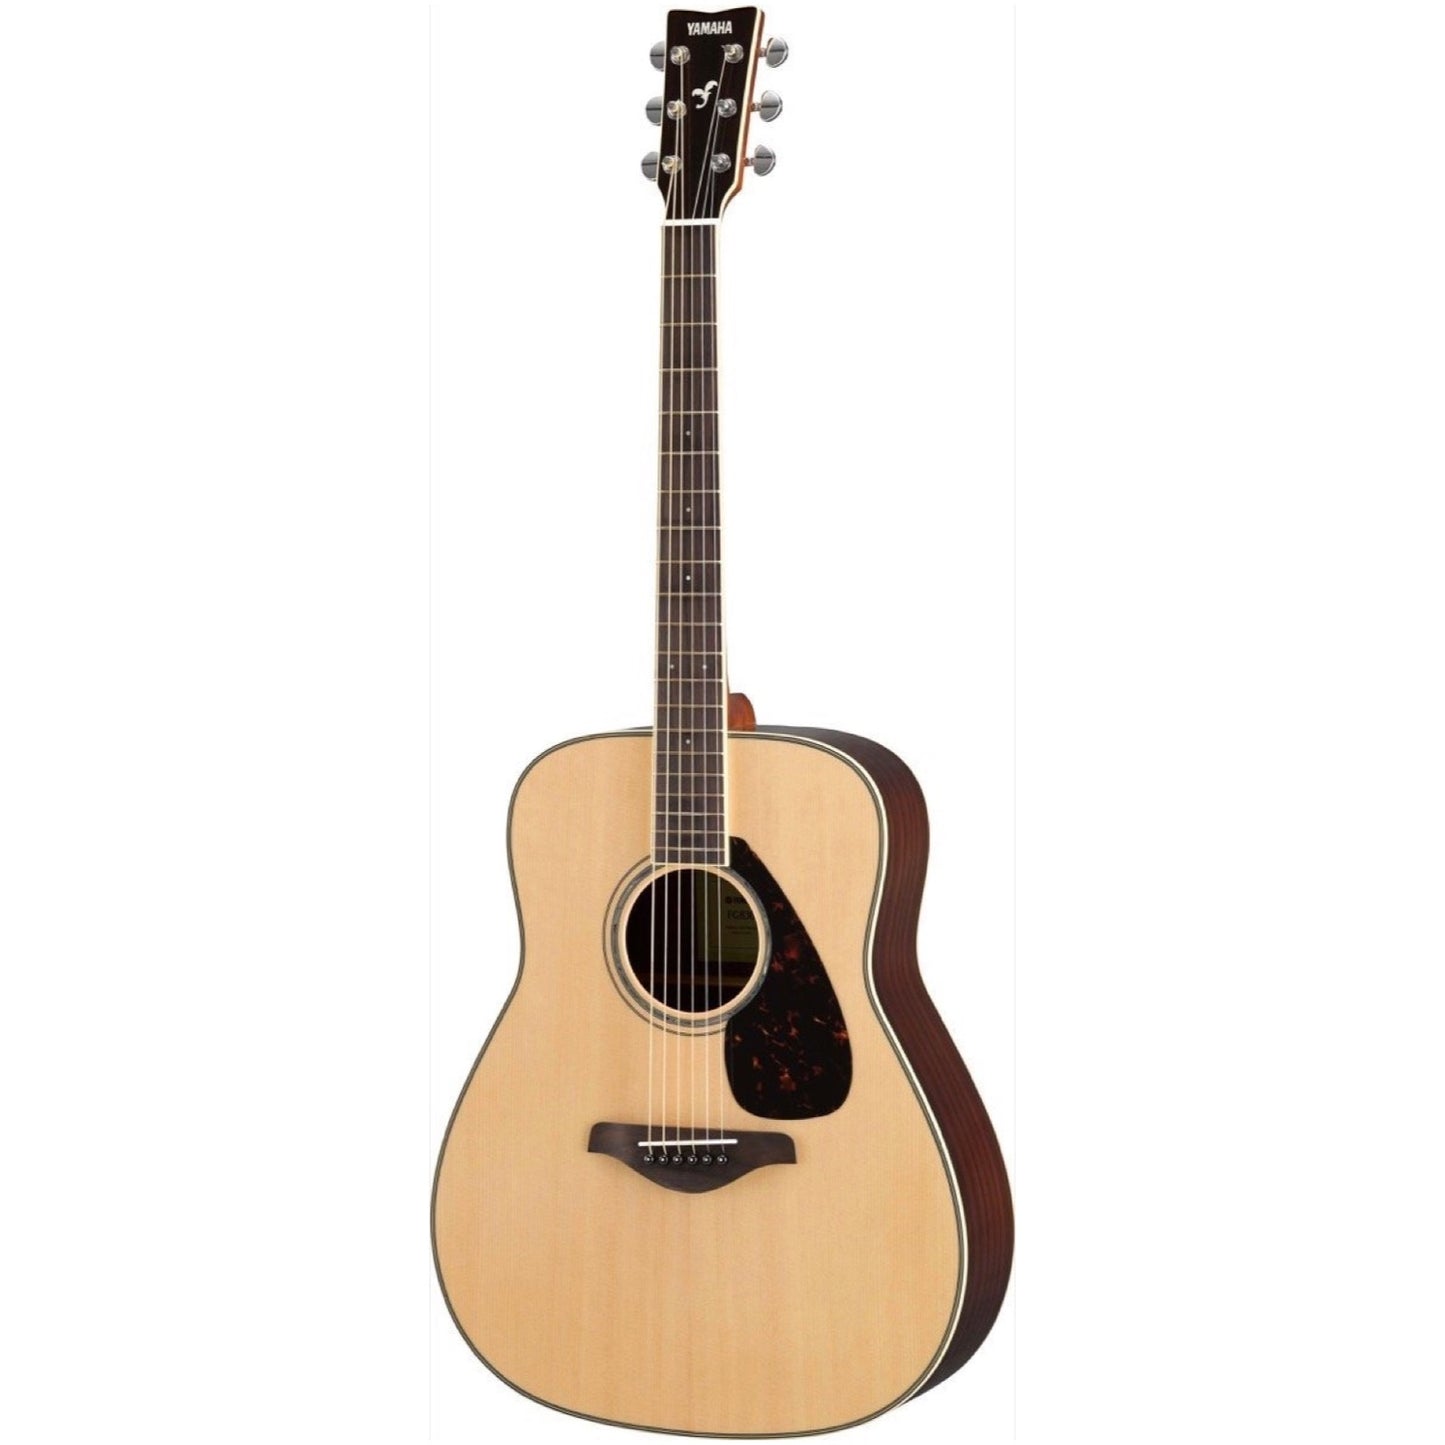 Yamaha FG830 Folk Acoustic Guitar